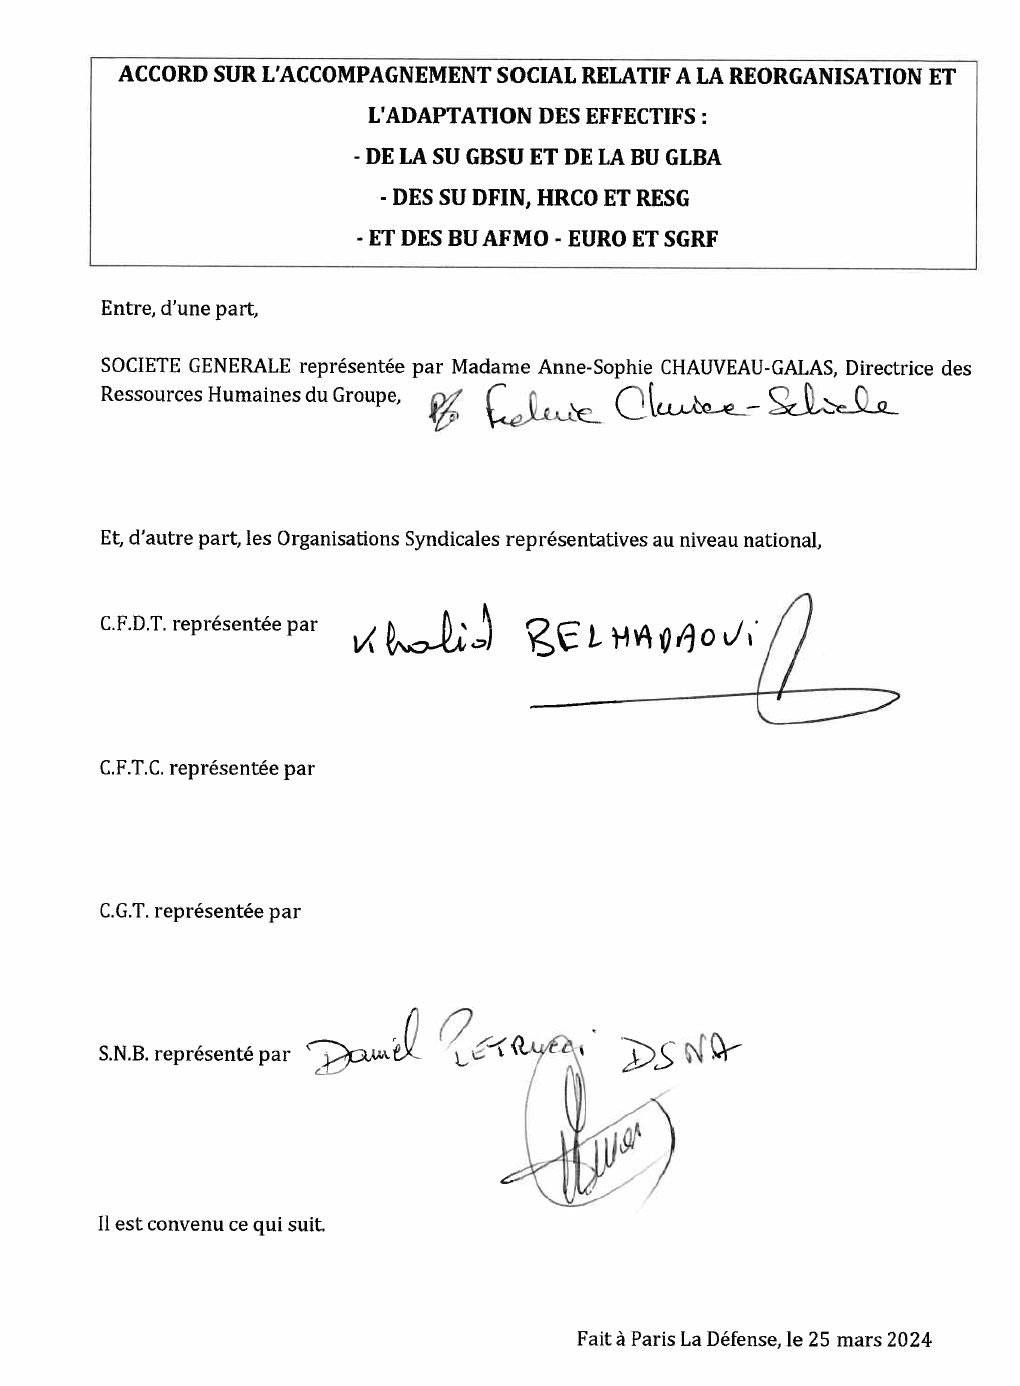 IRCC / Plan / réorganisations 2024 - 27 mars 2024 : L'accord signé par la CFDT et le SNB